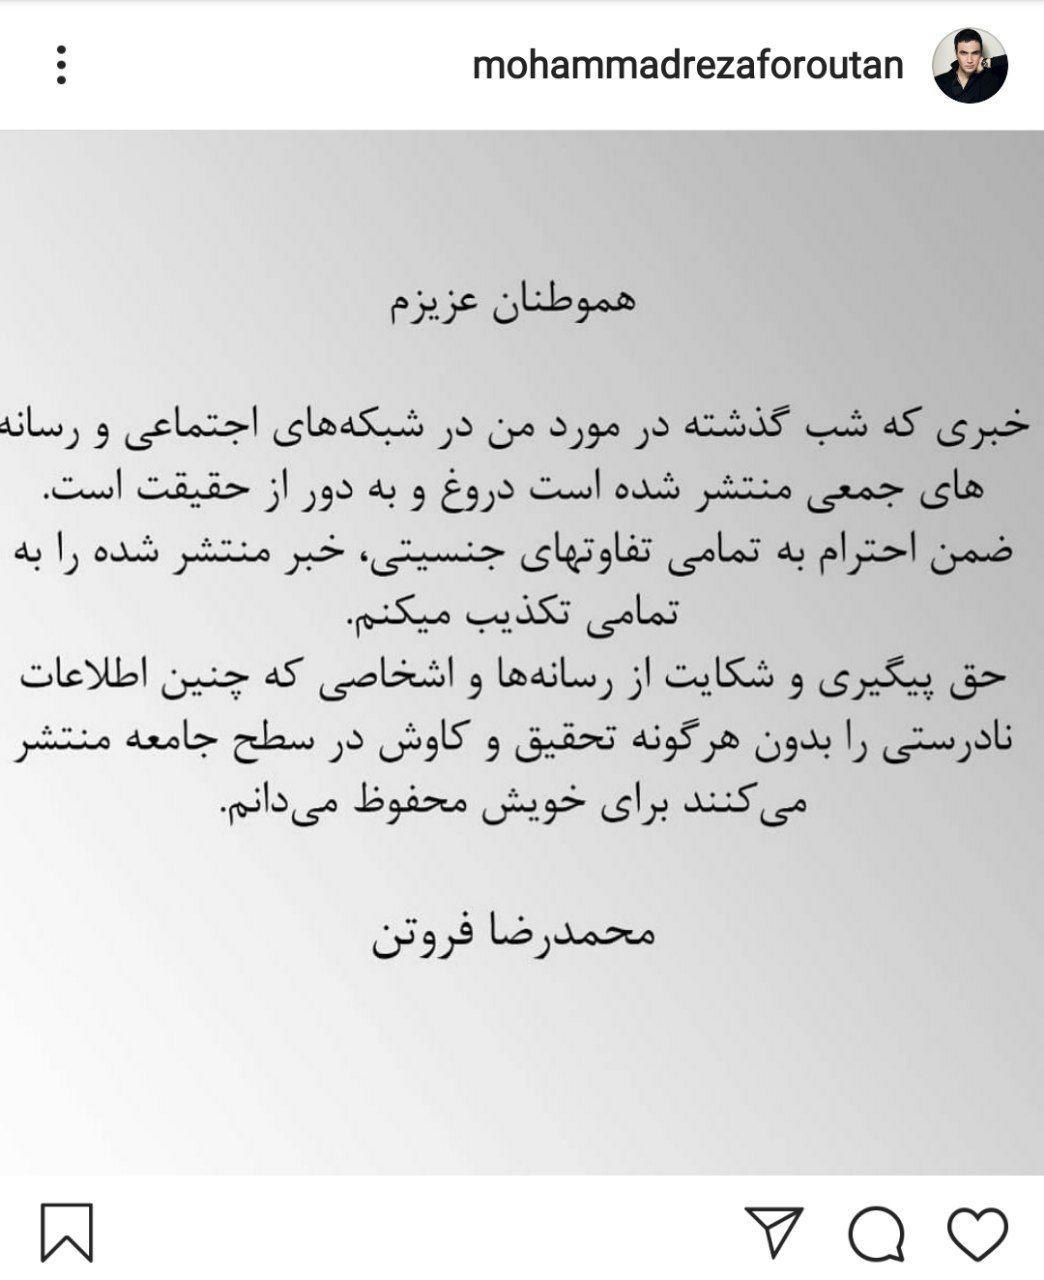 محمدرضا فروتن شایعه تغییر جنیست را تکذیب کرد + عکس